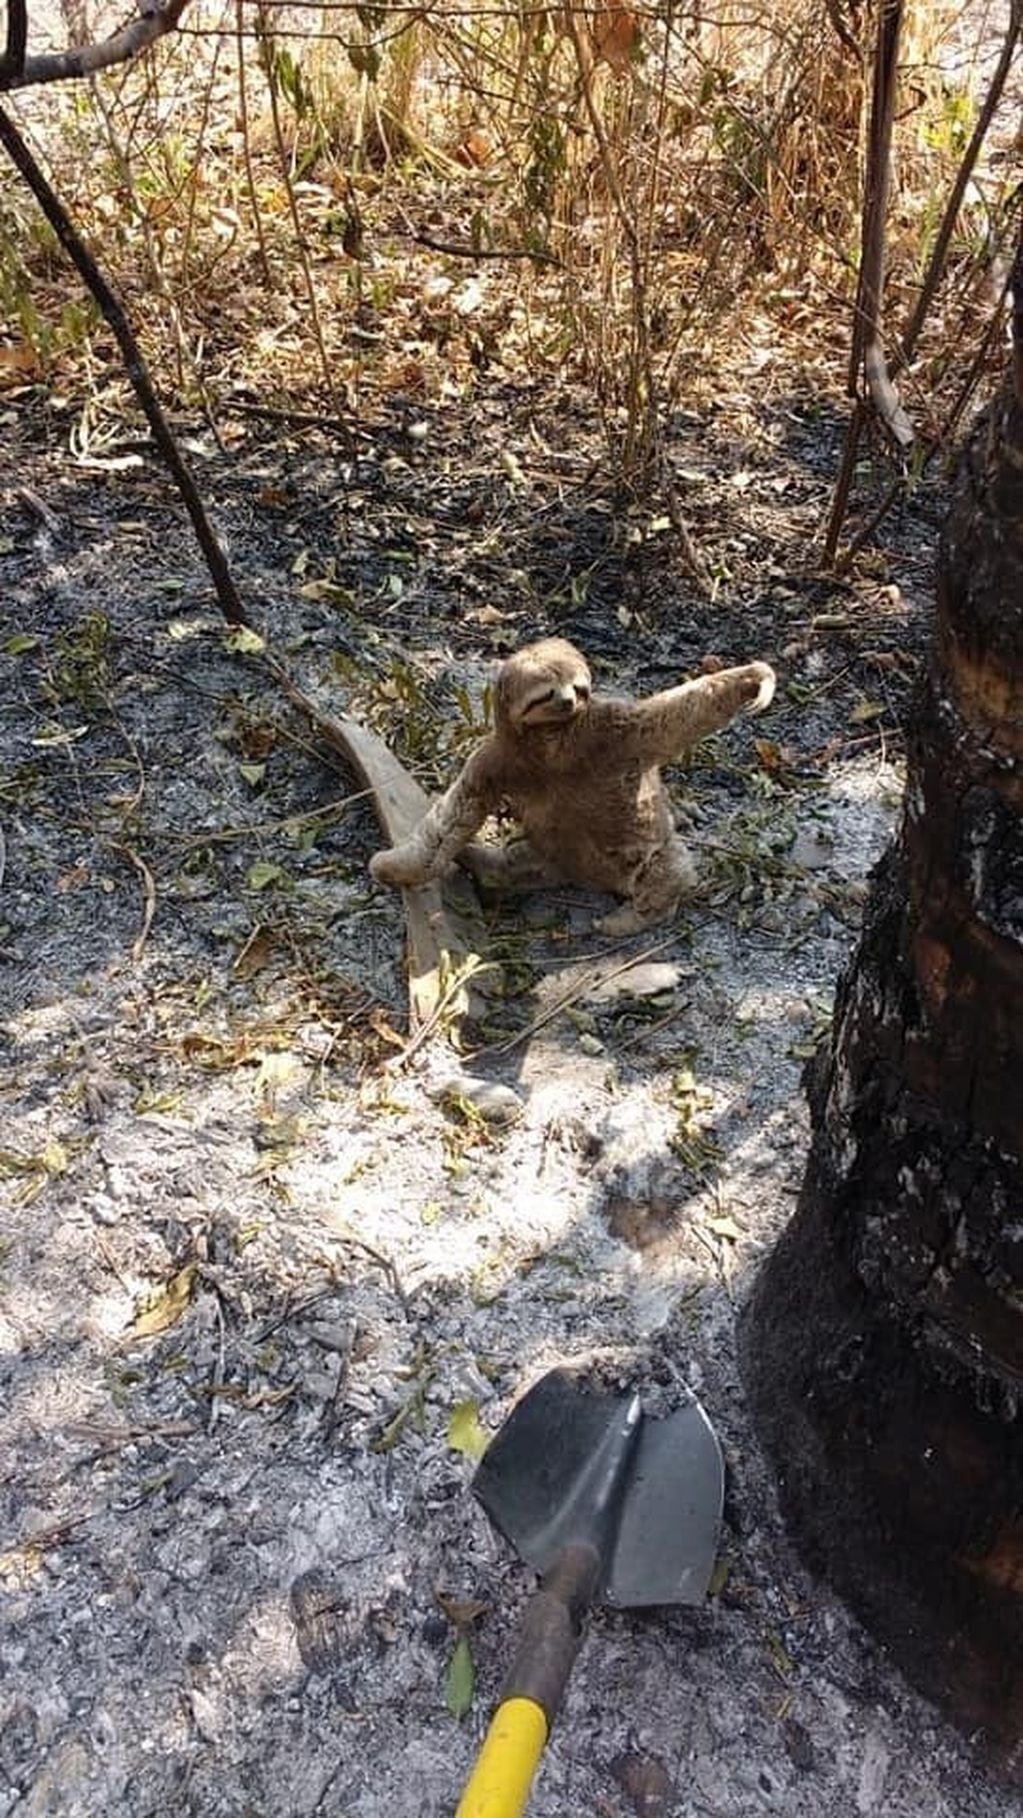 El pequeño animal sobreviviente al fuego, pudo ser socorrido. A su alrededor, cenizas y devastación.